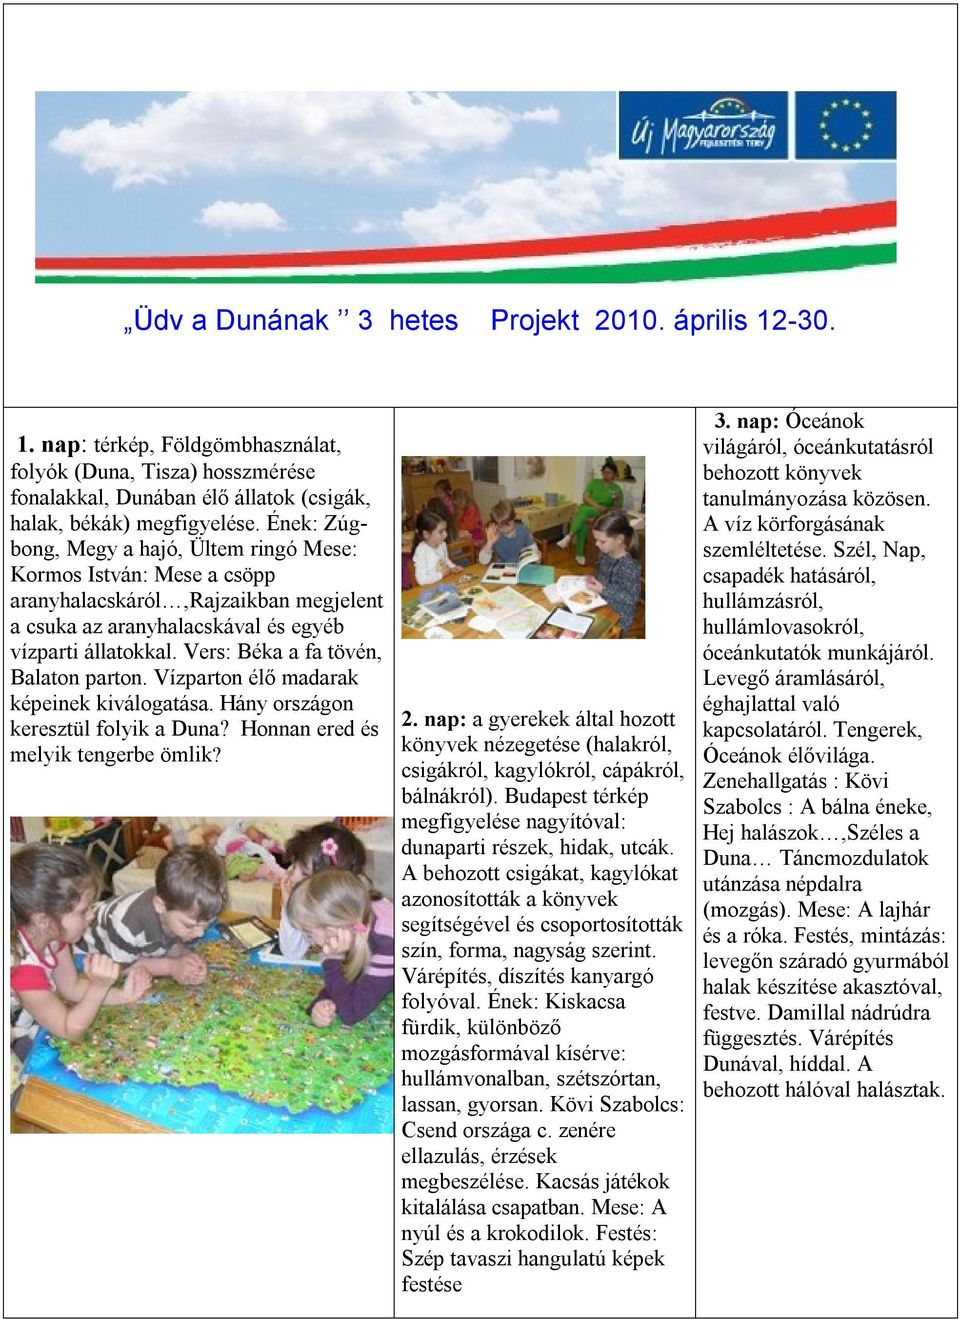 Üdv a Dunának 3 hetes Projekt április - PDF Free Download